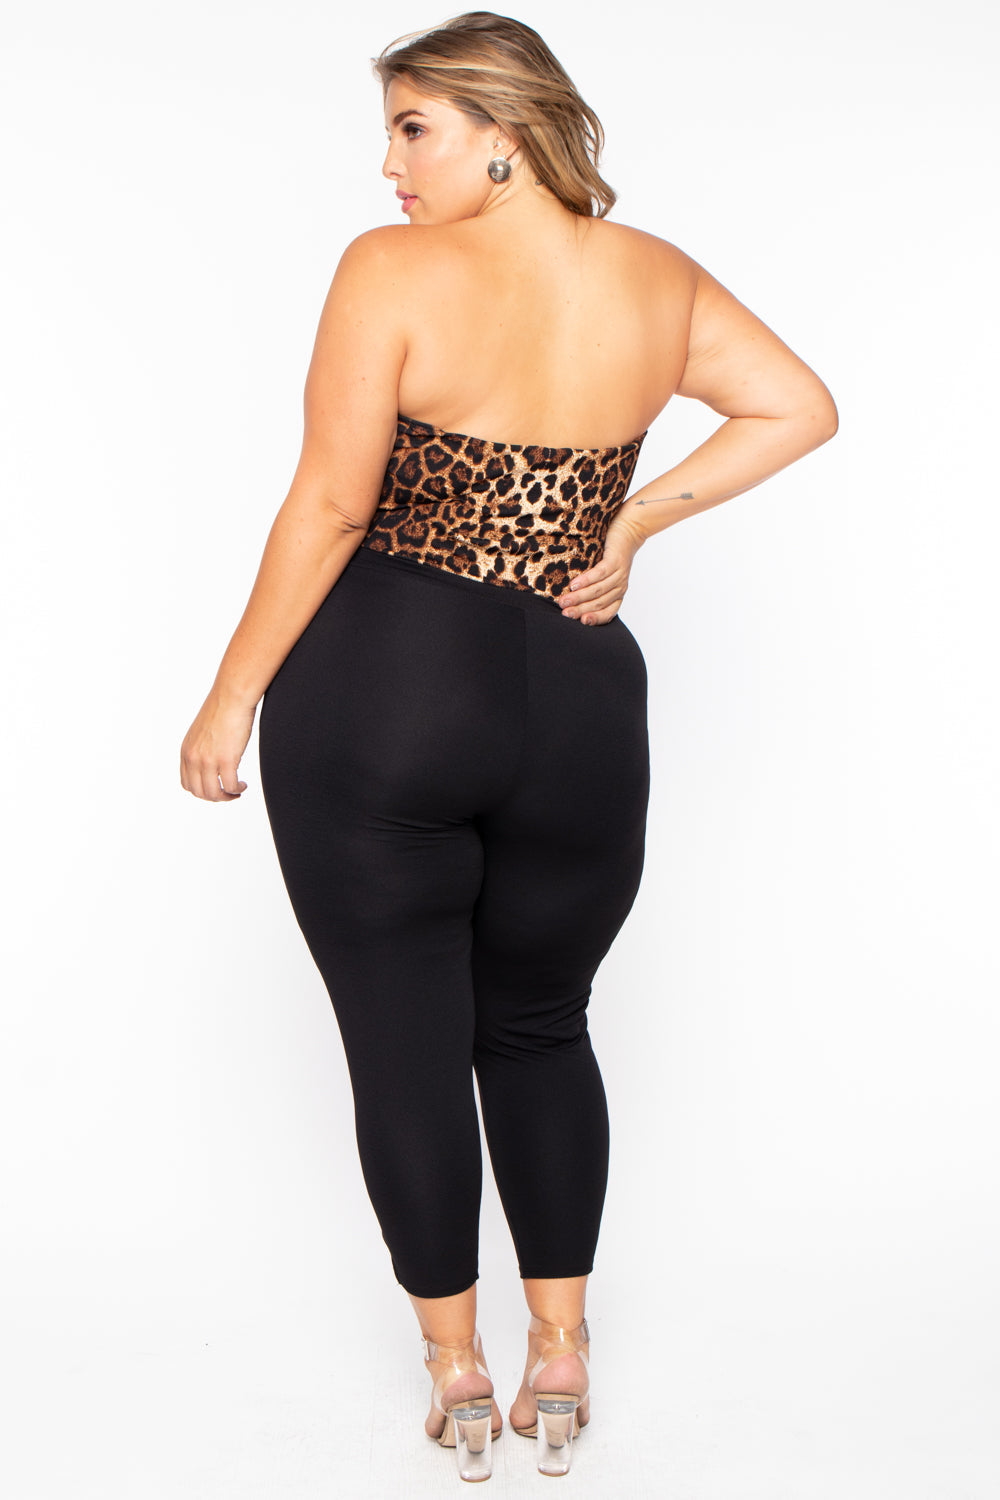 Plus Size Nova Leopard Top Jumpsuit - Black – Curvy Sense